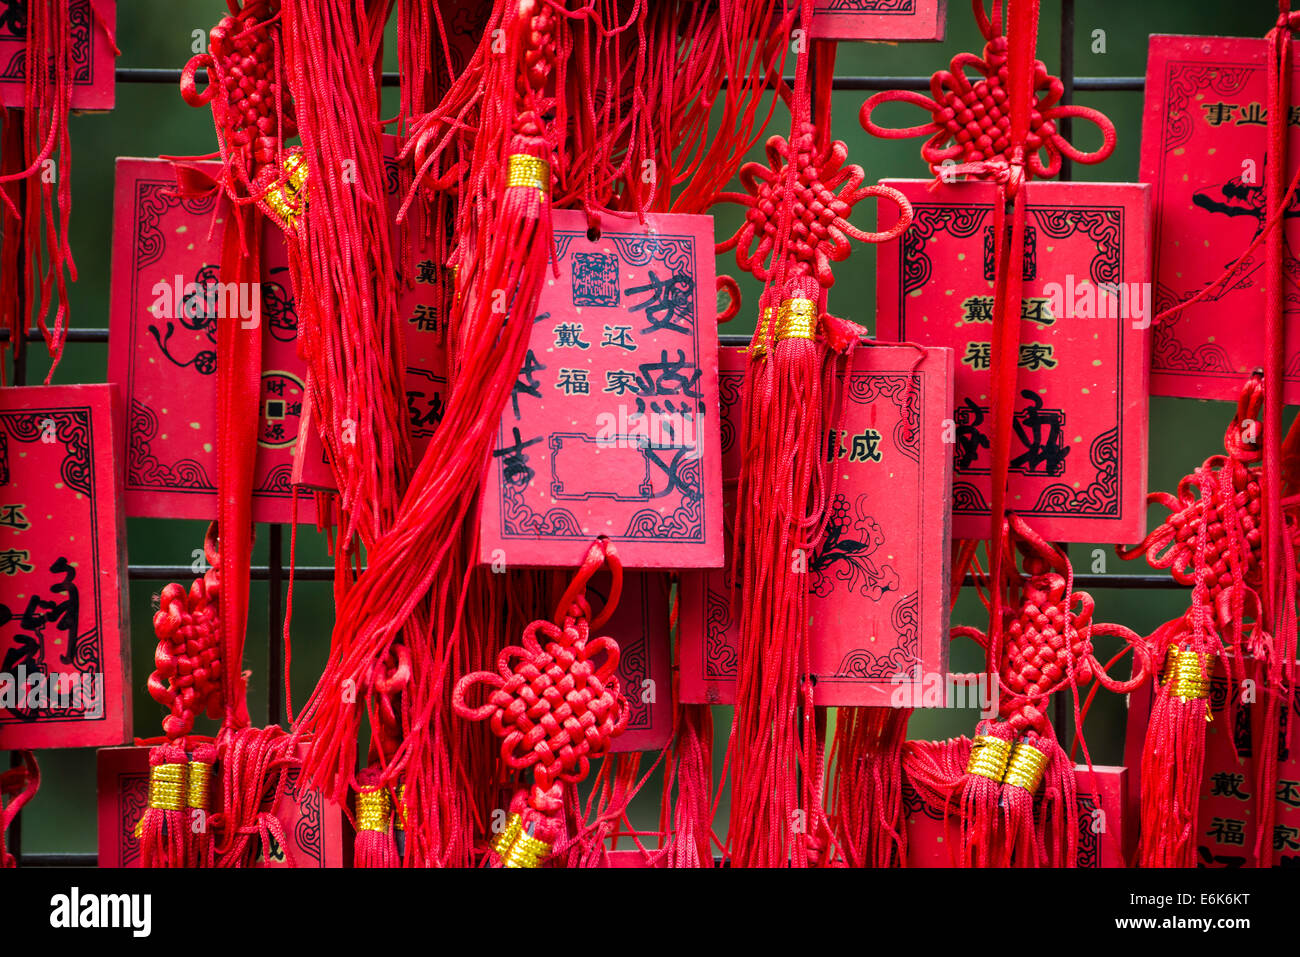 Red Chinese wishing cards, Beijing, China Stock Photo